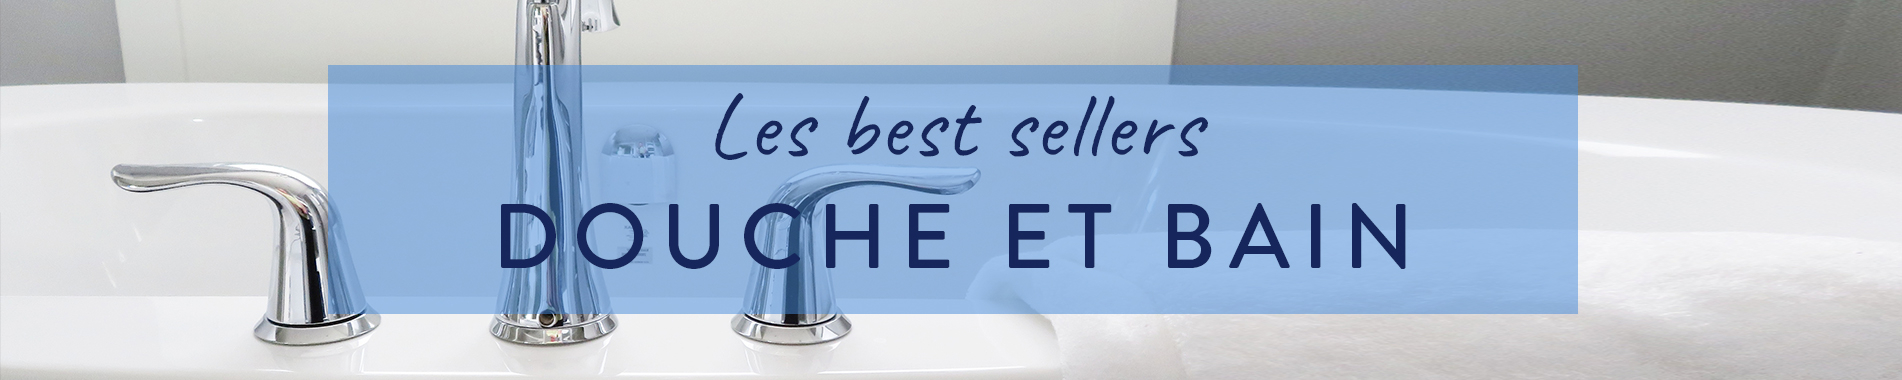 Best sellers  : Les meilleures ventes de soins pour la douche et le bain en parapharmacie